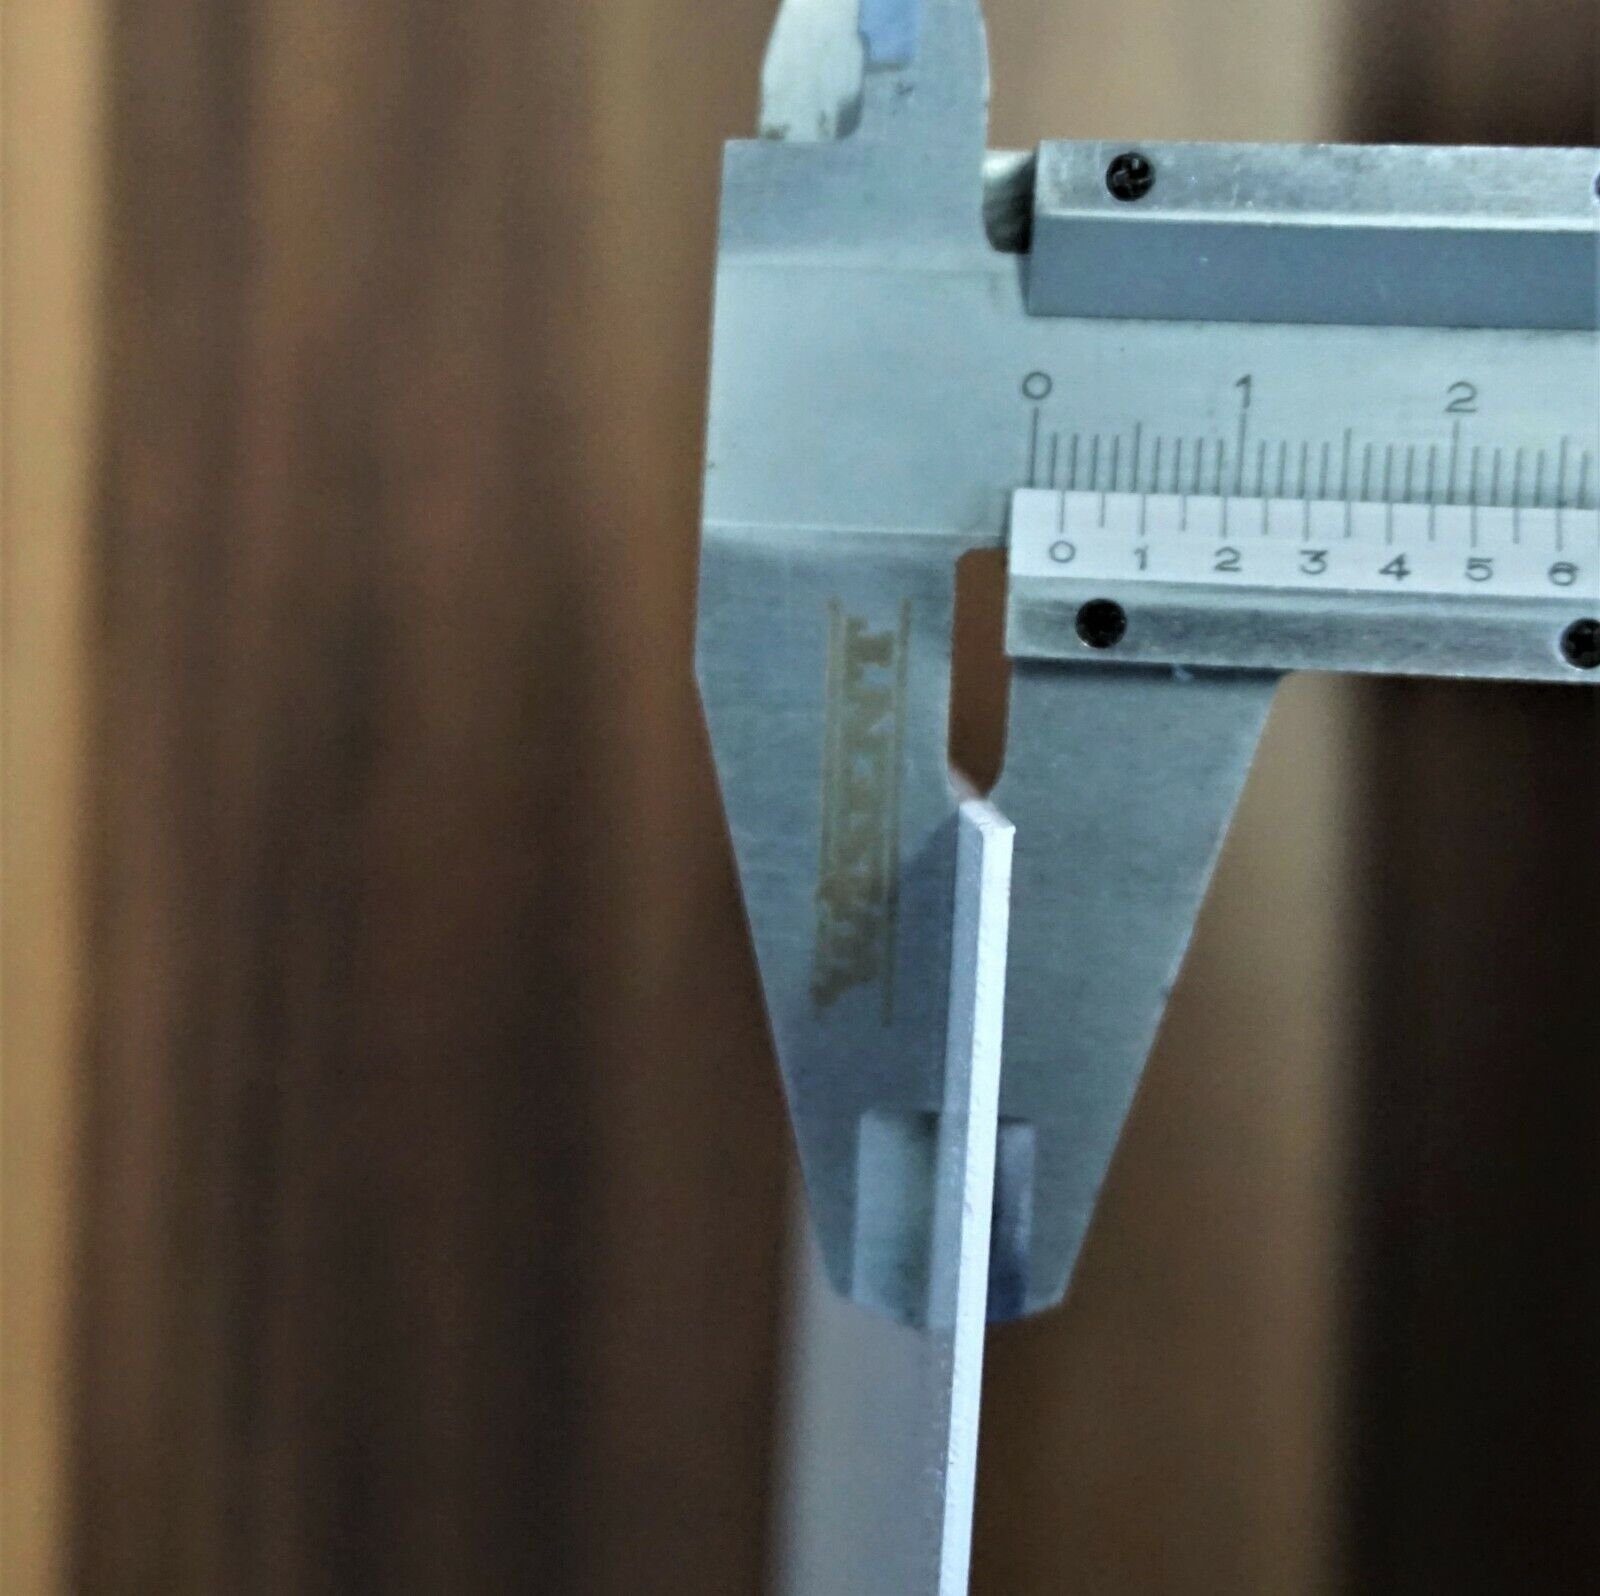 Rodnik Küchenrückwand Weiße Monolith Direktdruck mit DELUXE ABS-Kunststoff Platte in Kugeln, Qualität